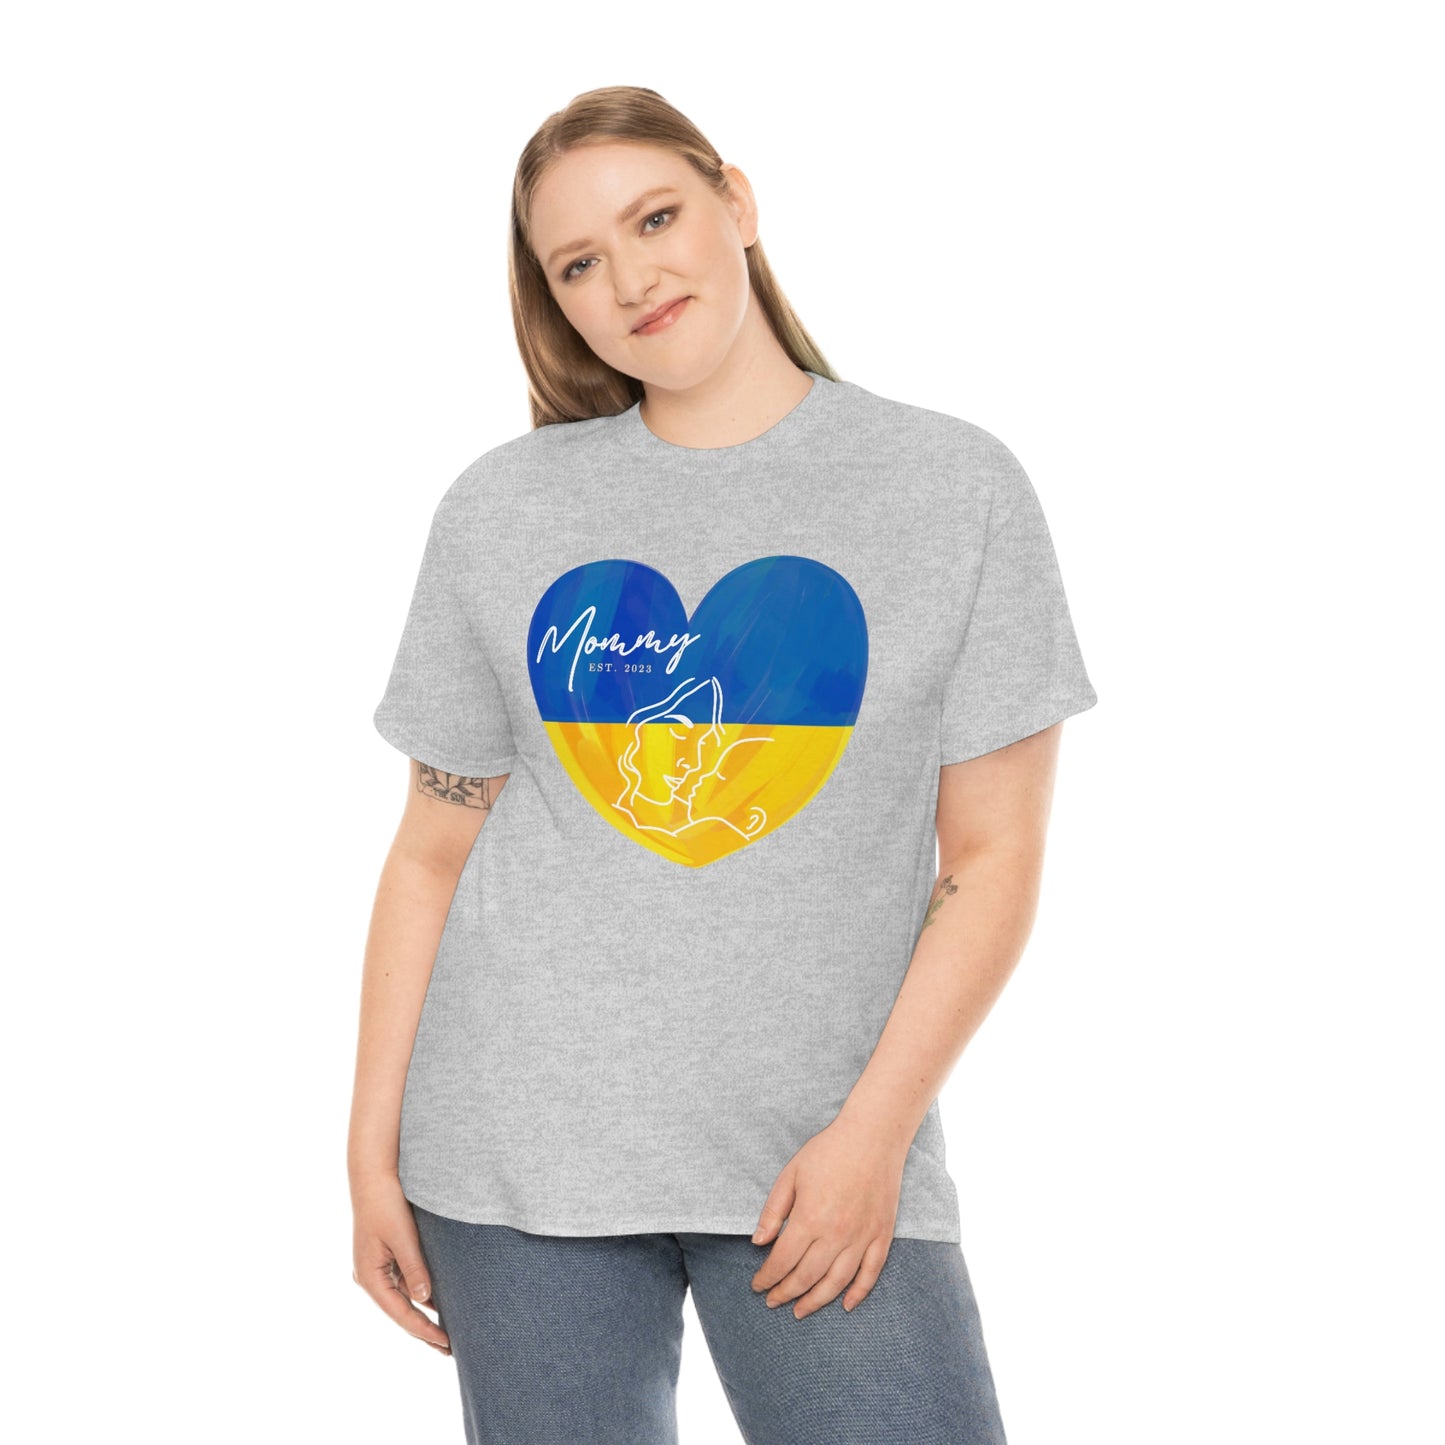 Ukraine Mommy Est 2023 Mothers Day Gift for Ukrainian MOM T-Shirt | Unisex Tee Shirt